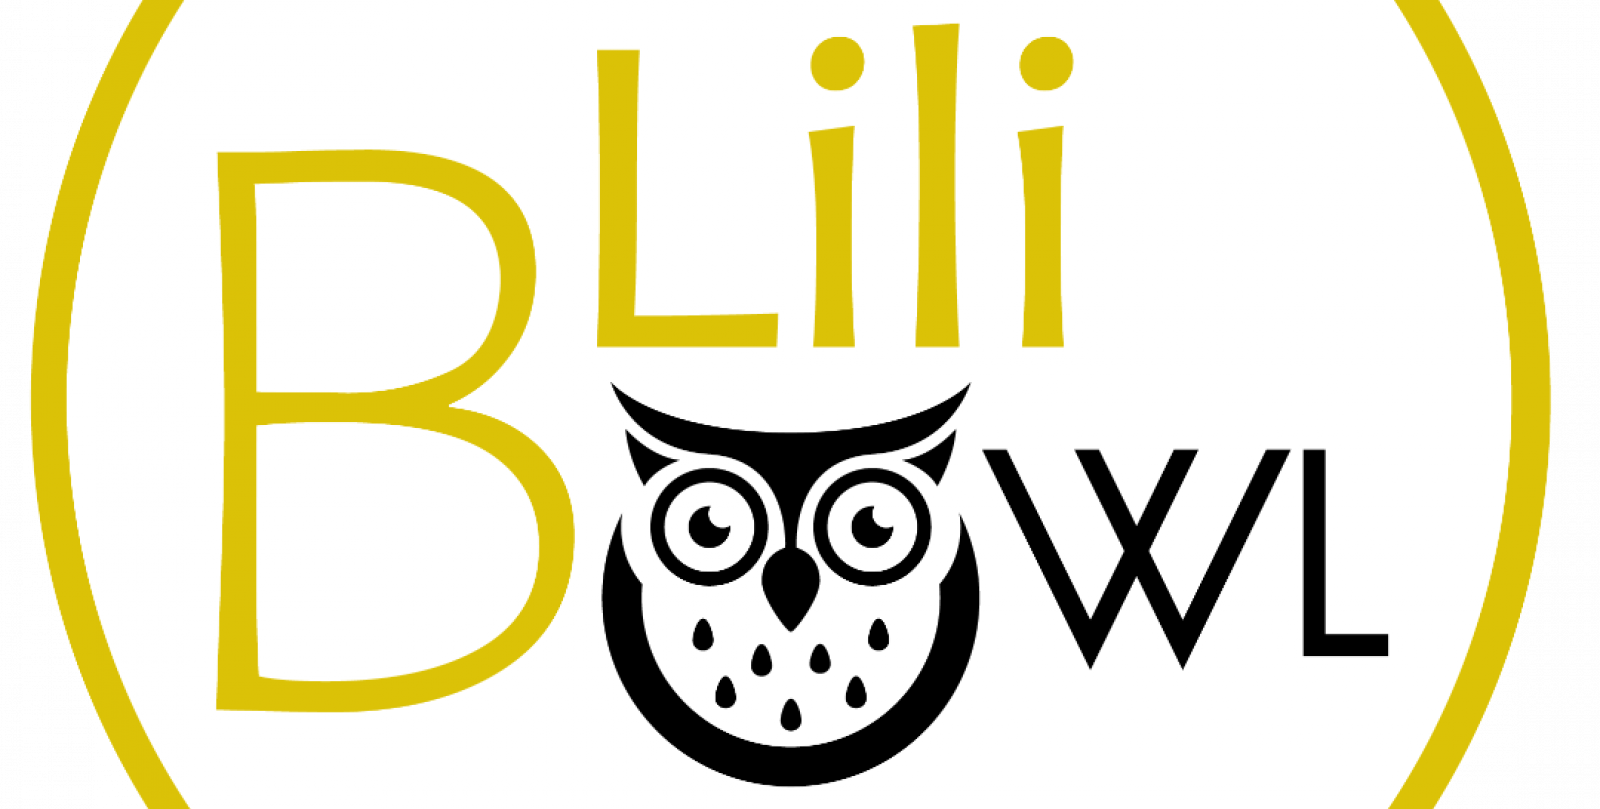 Lilibowl logo white background